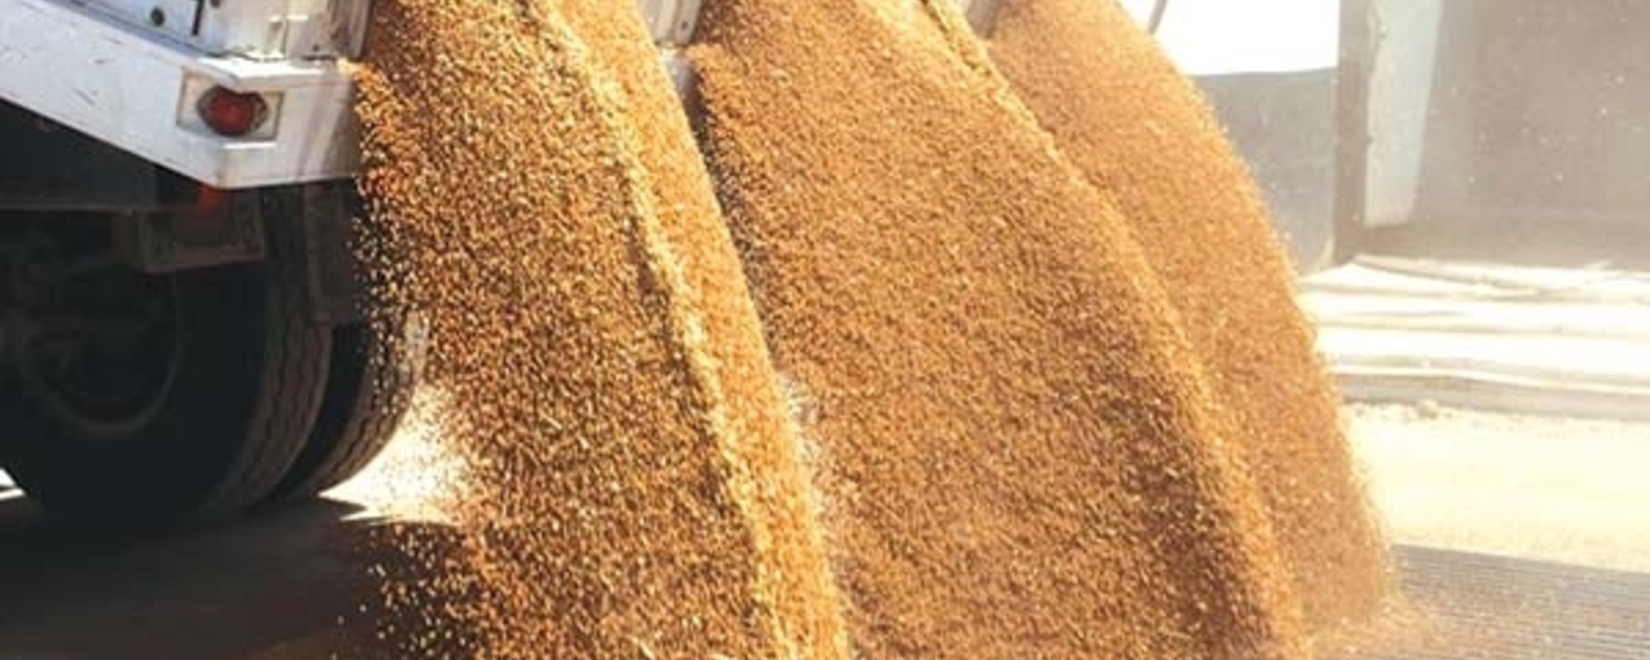 Казахстанская пшеница становится «токсичной»